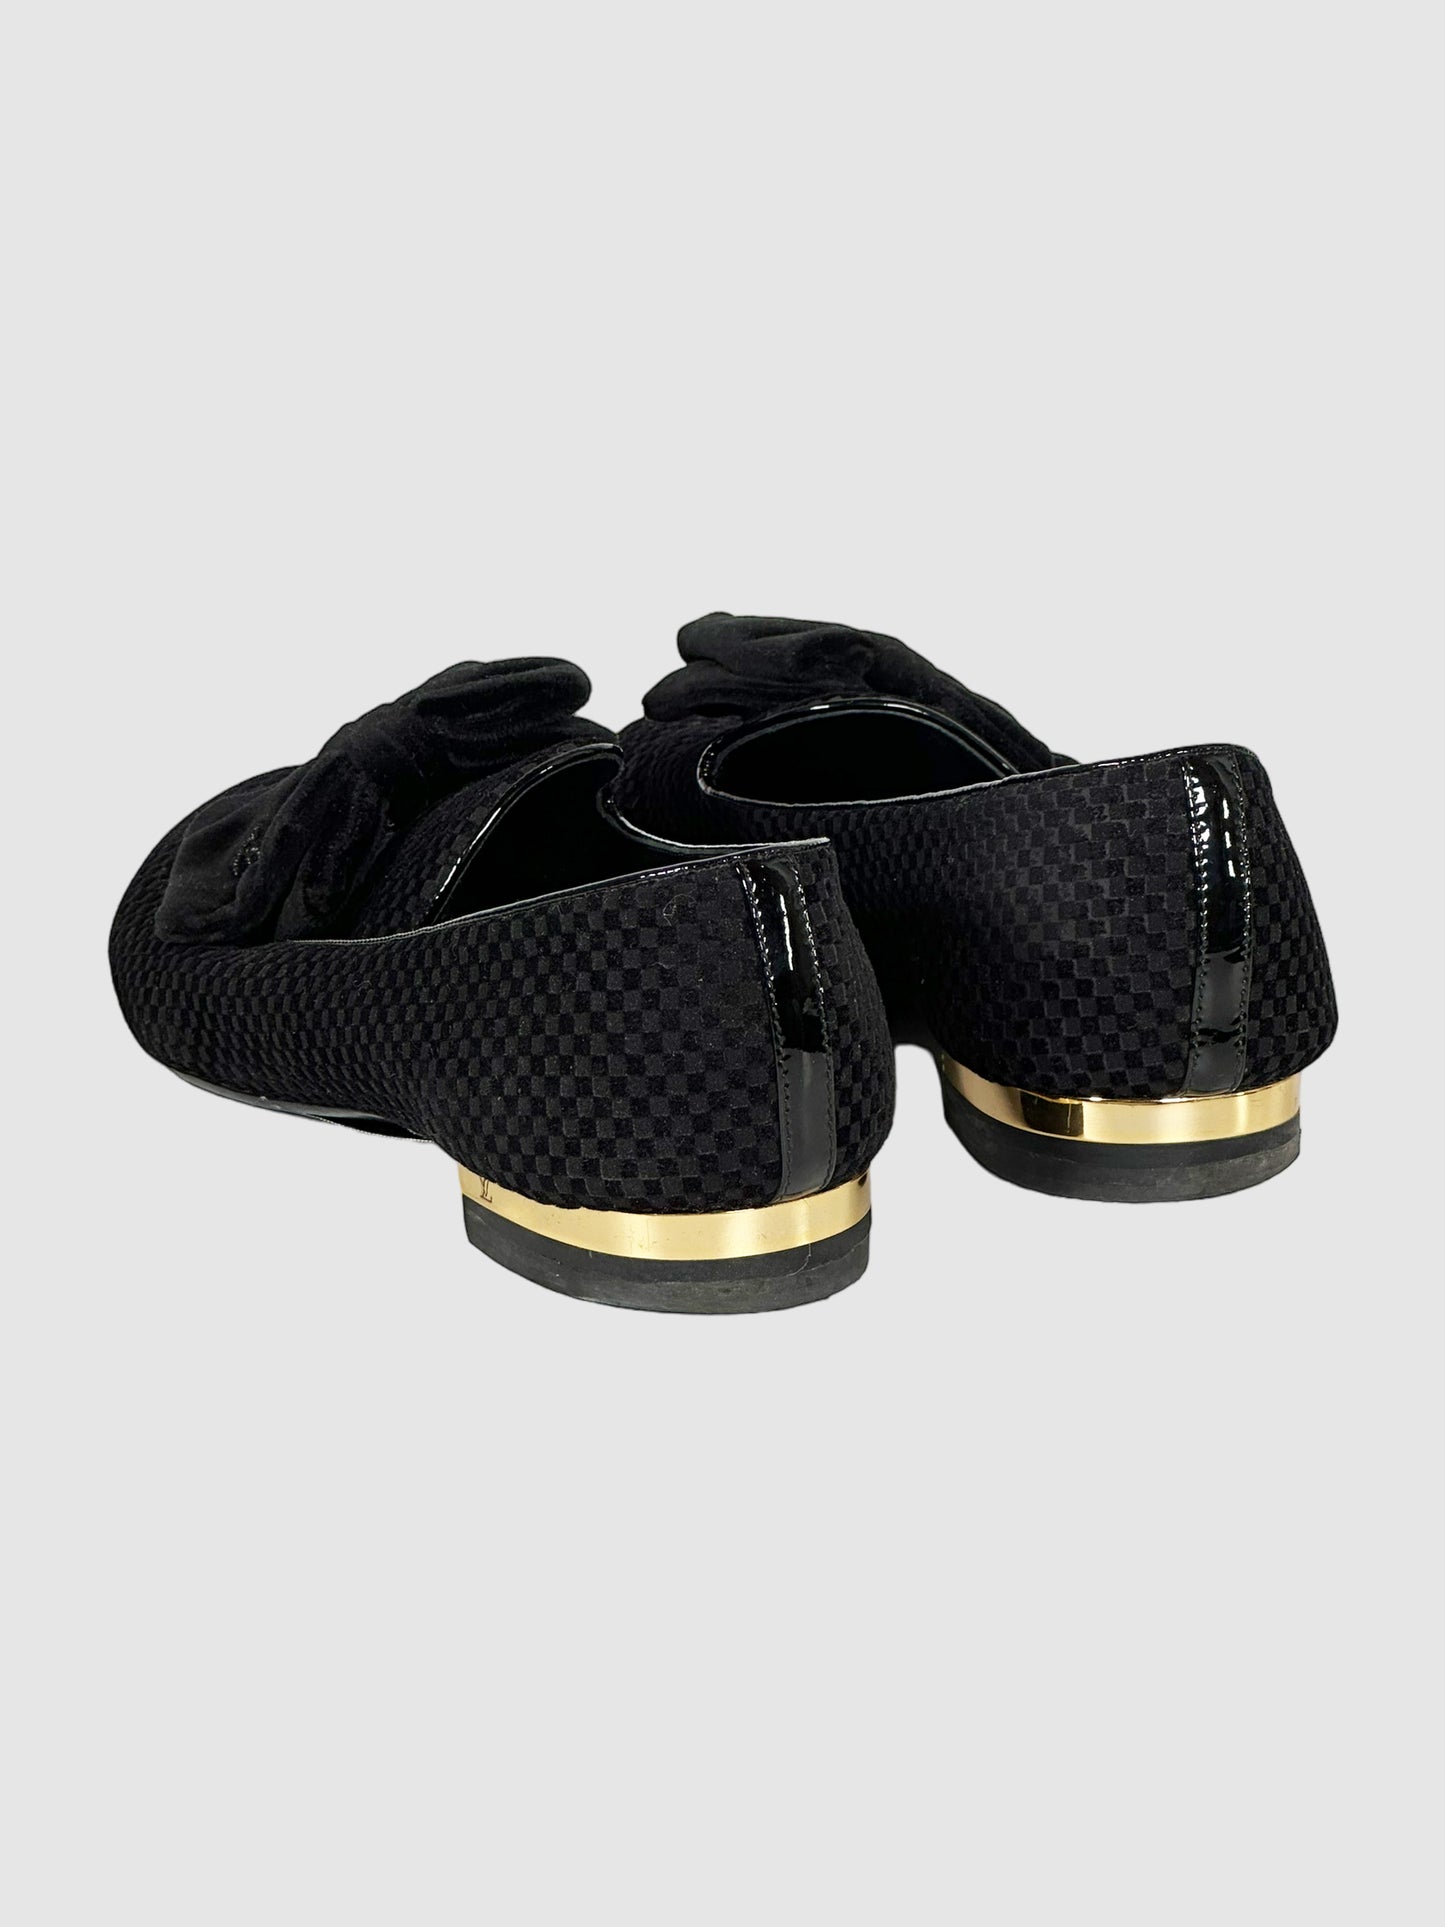 Damier Velvet Loafers - Size 37